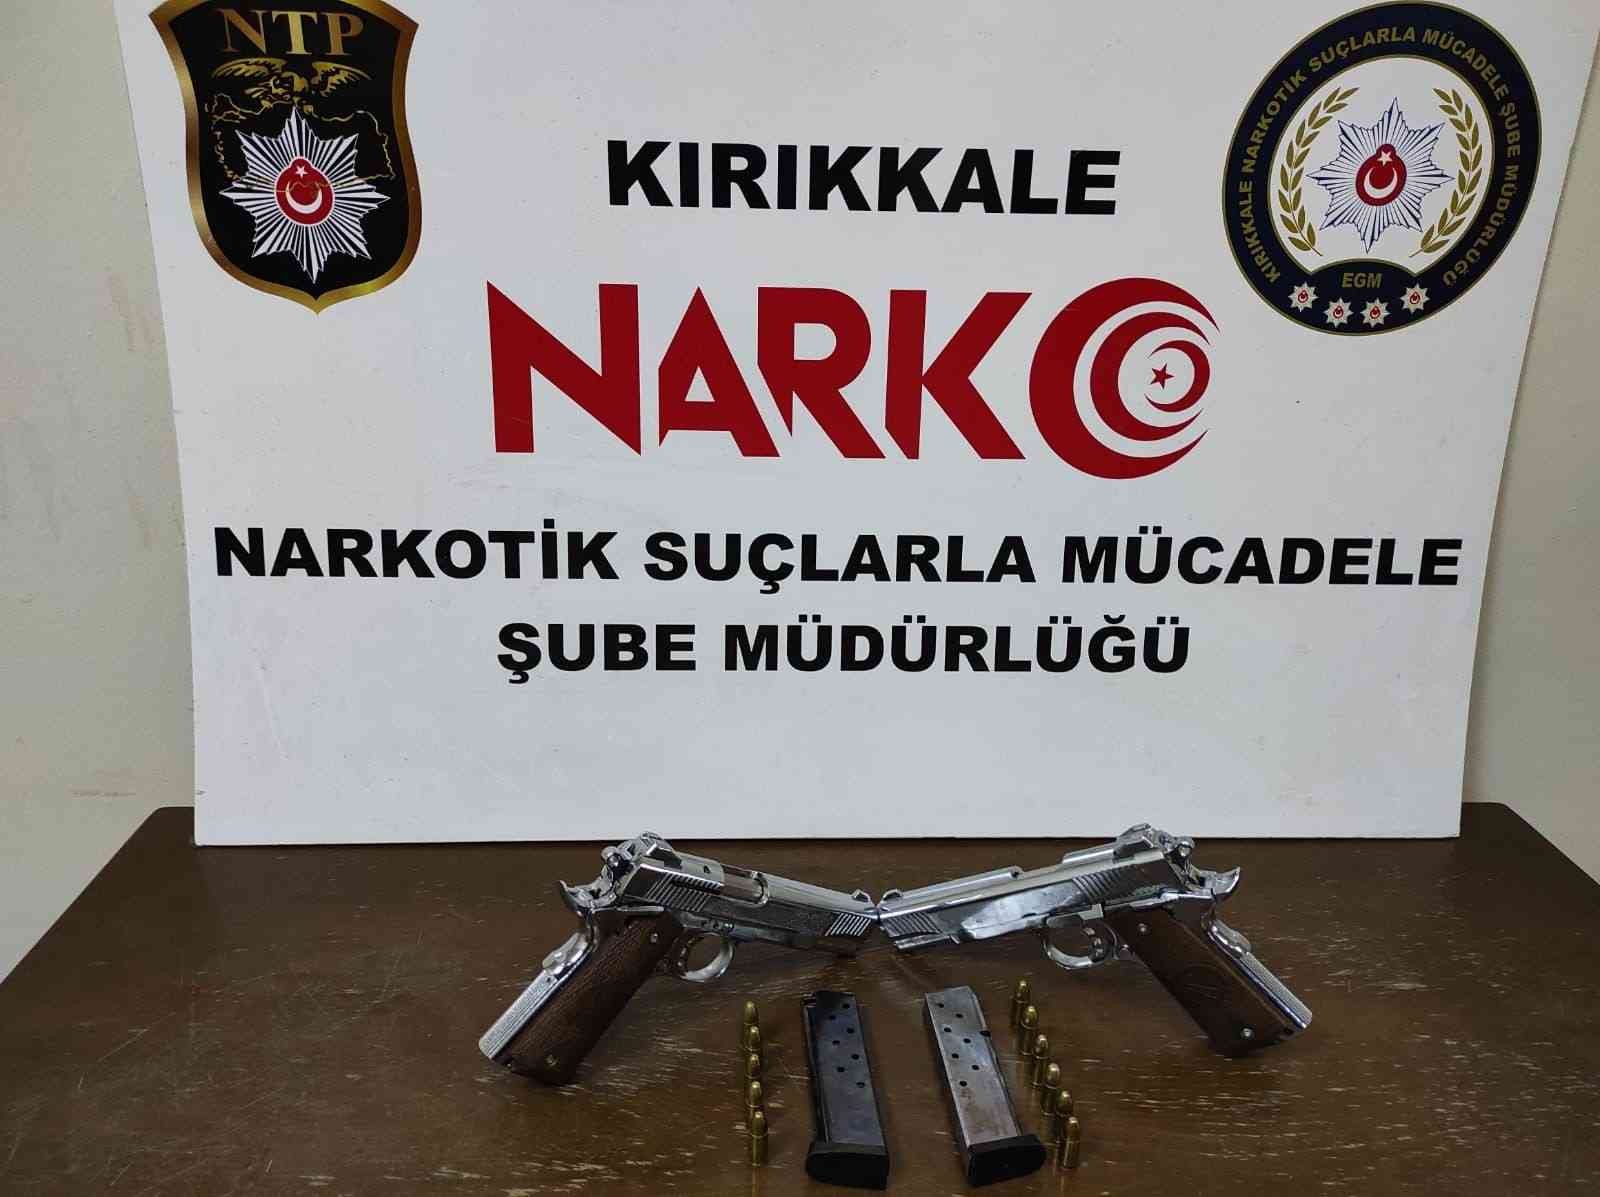 Kırıkkale’de 2 adet ruhsatsız tabanca ele geçirildi #kirikkale